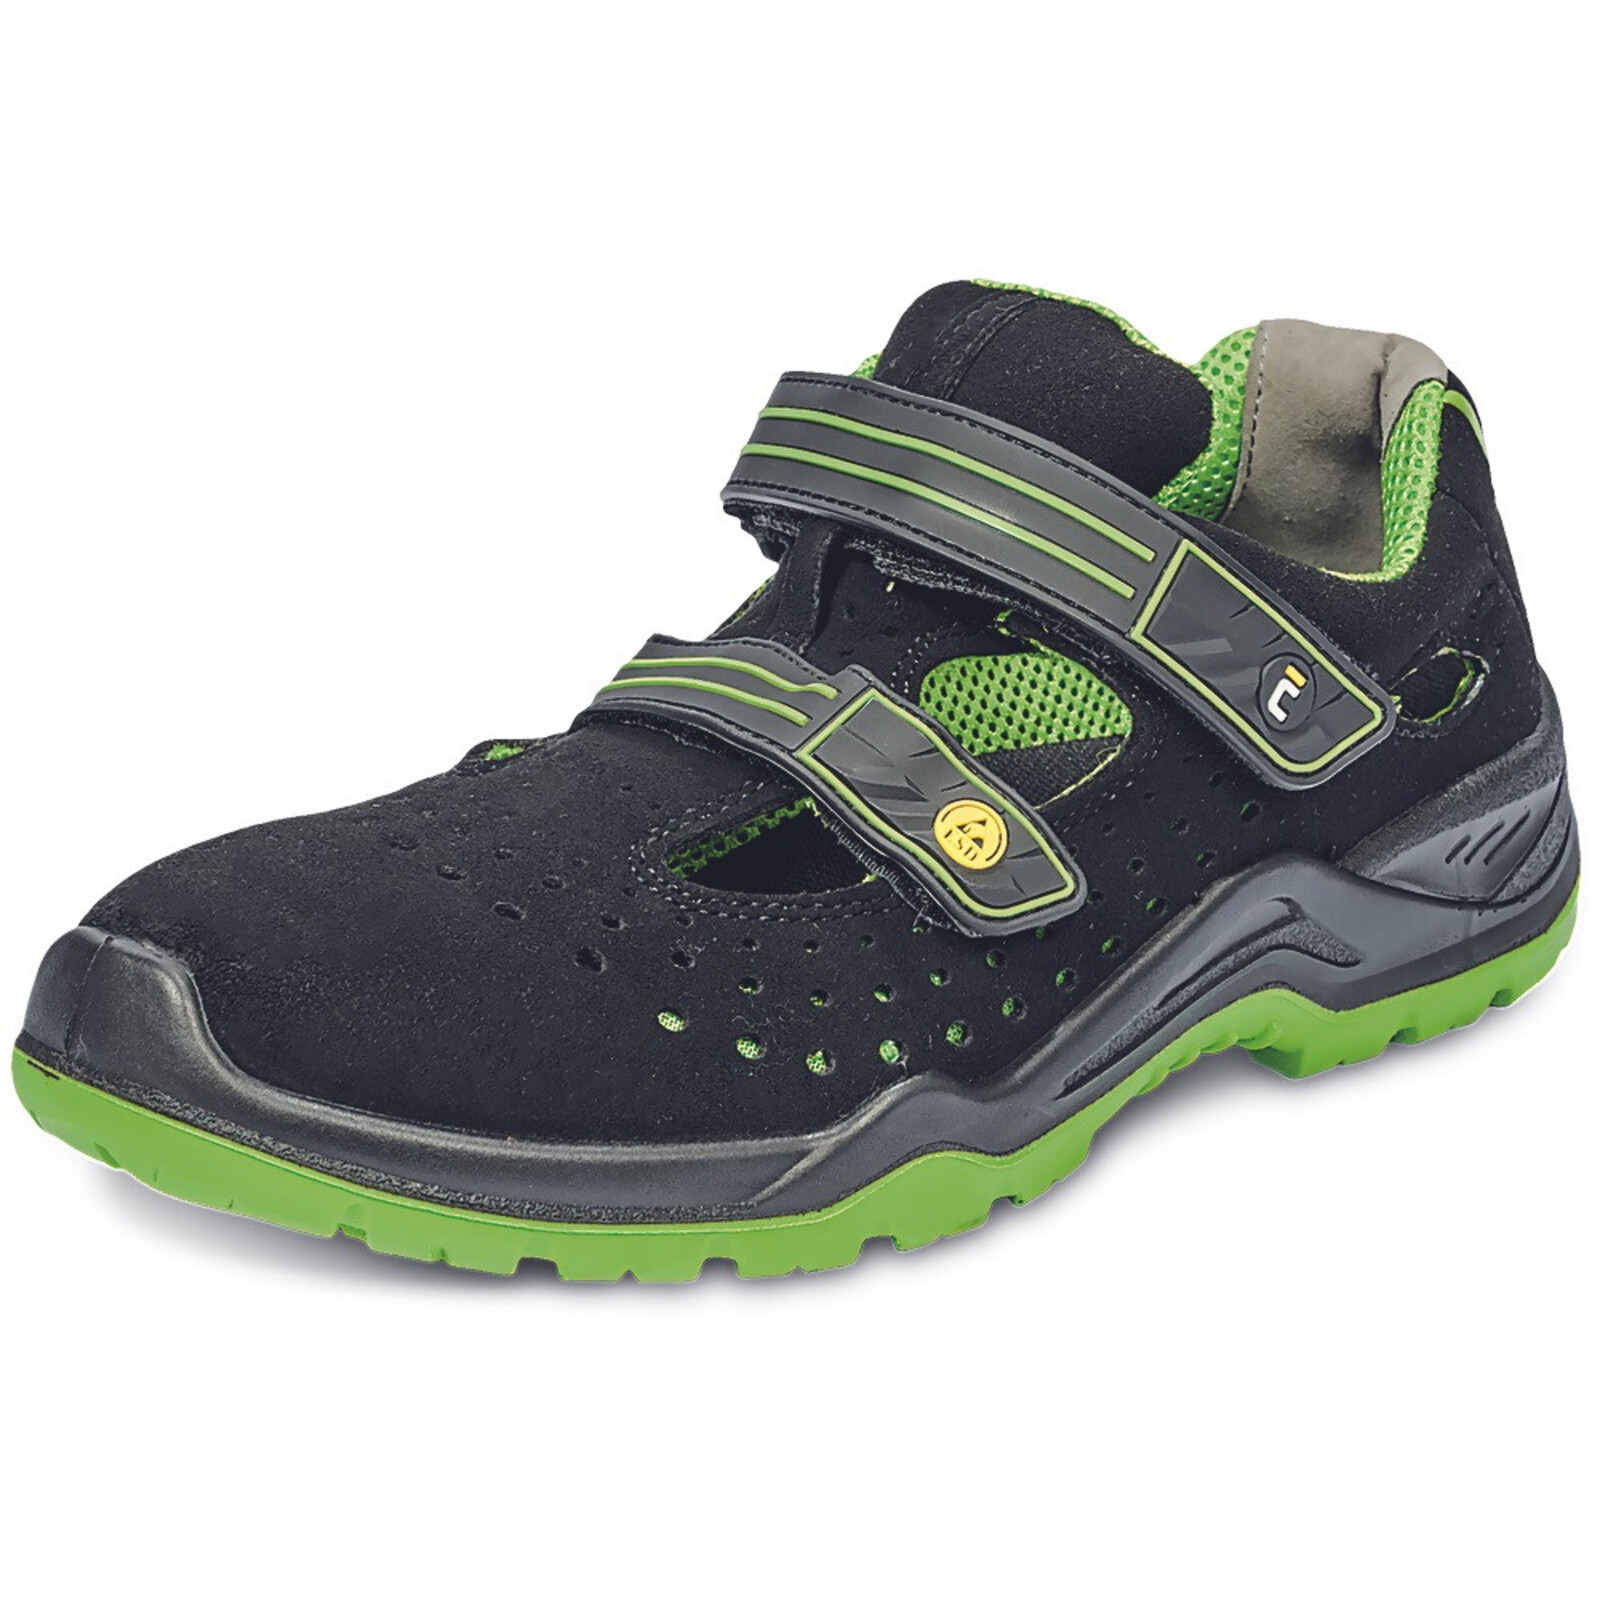 Bezpečnostné sandále Cerva Halwill MF ESD S1P SRC - veľkosť: 37, farba: čierna/zelená